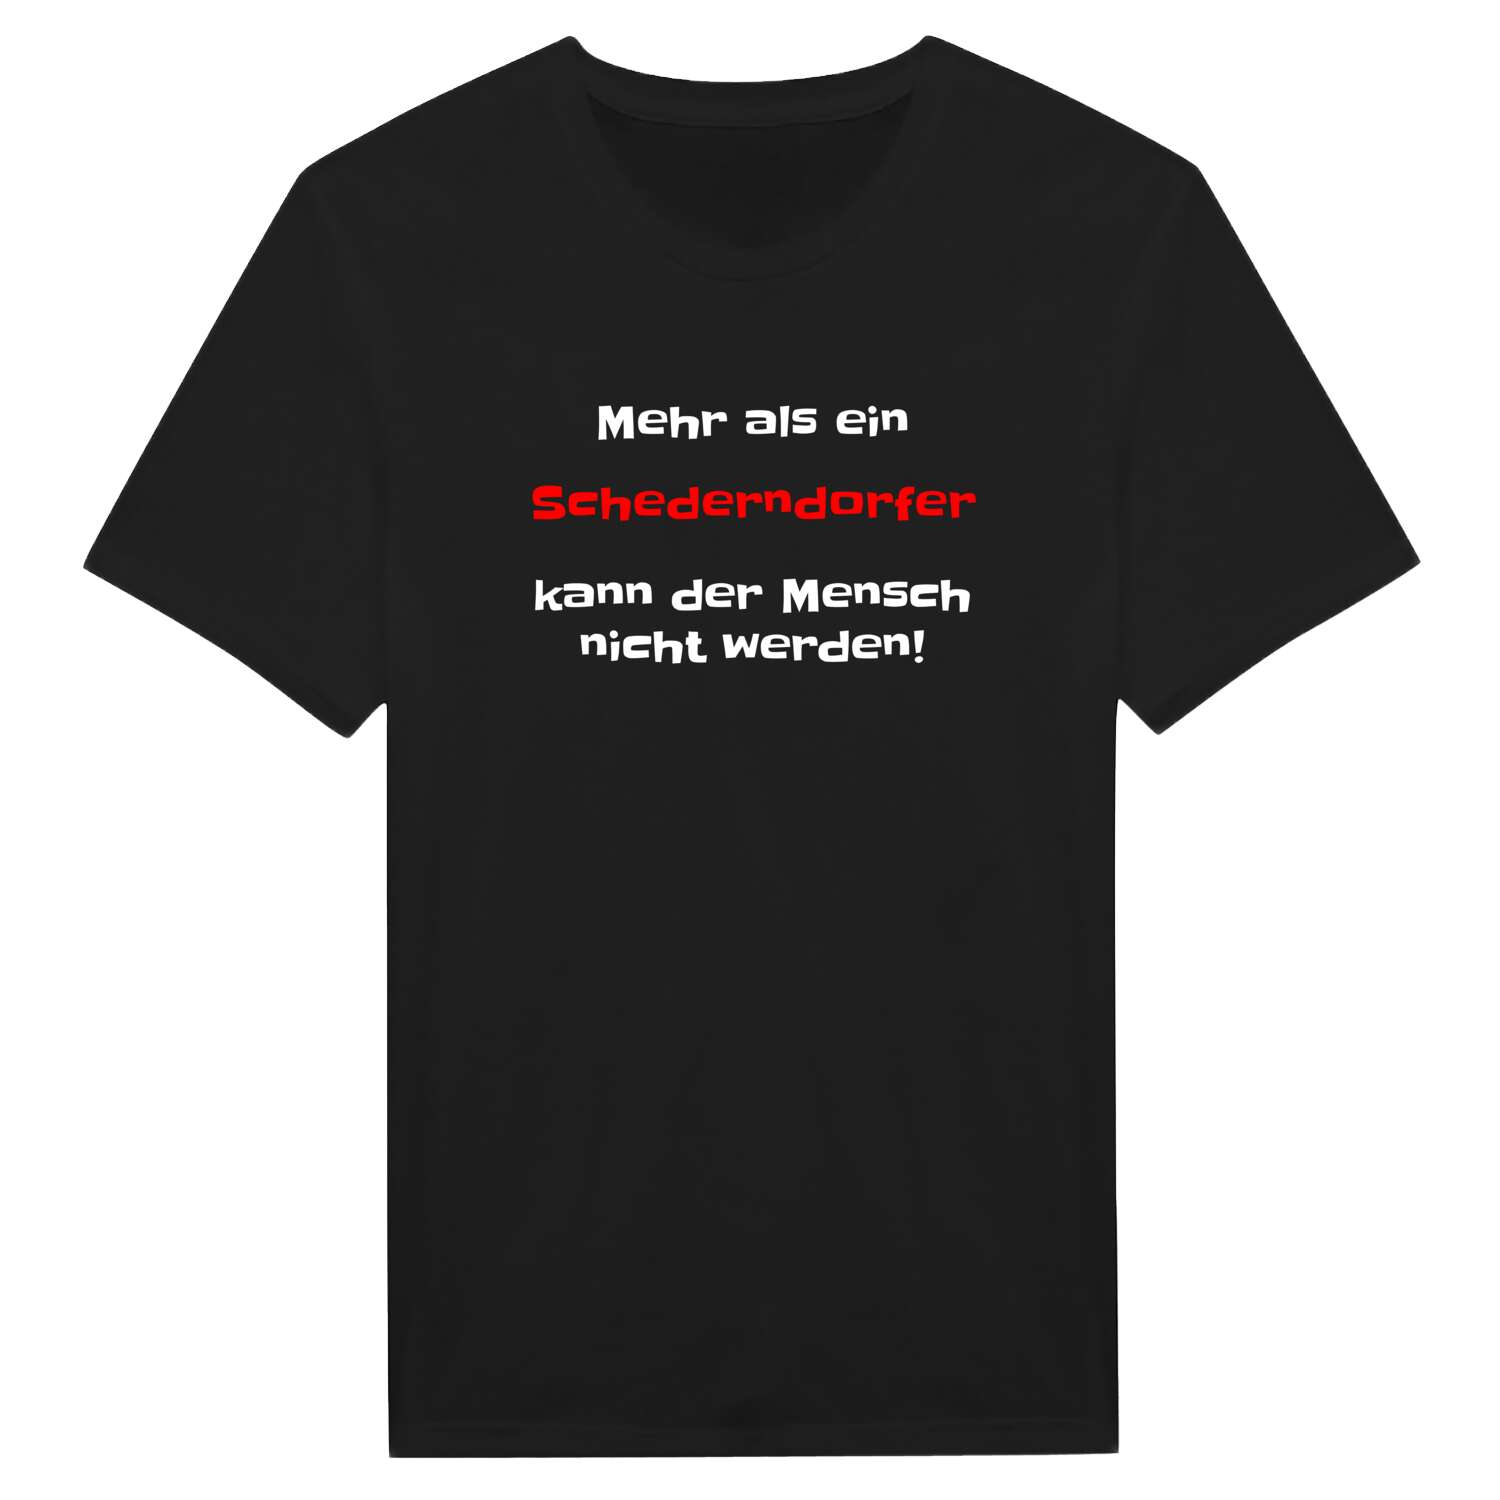 Schederndorf T-Shirt »Mehr als ein«